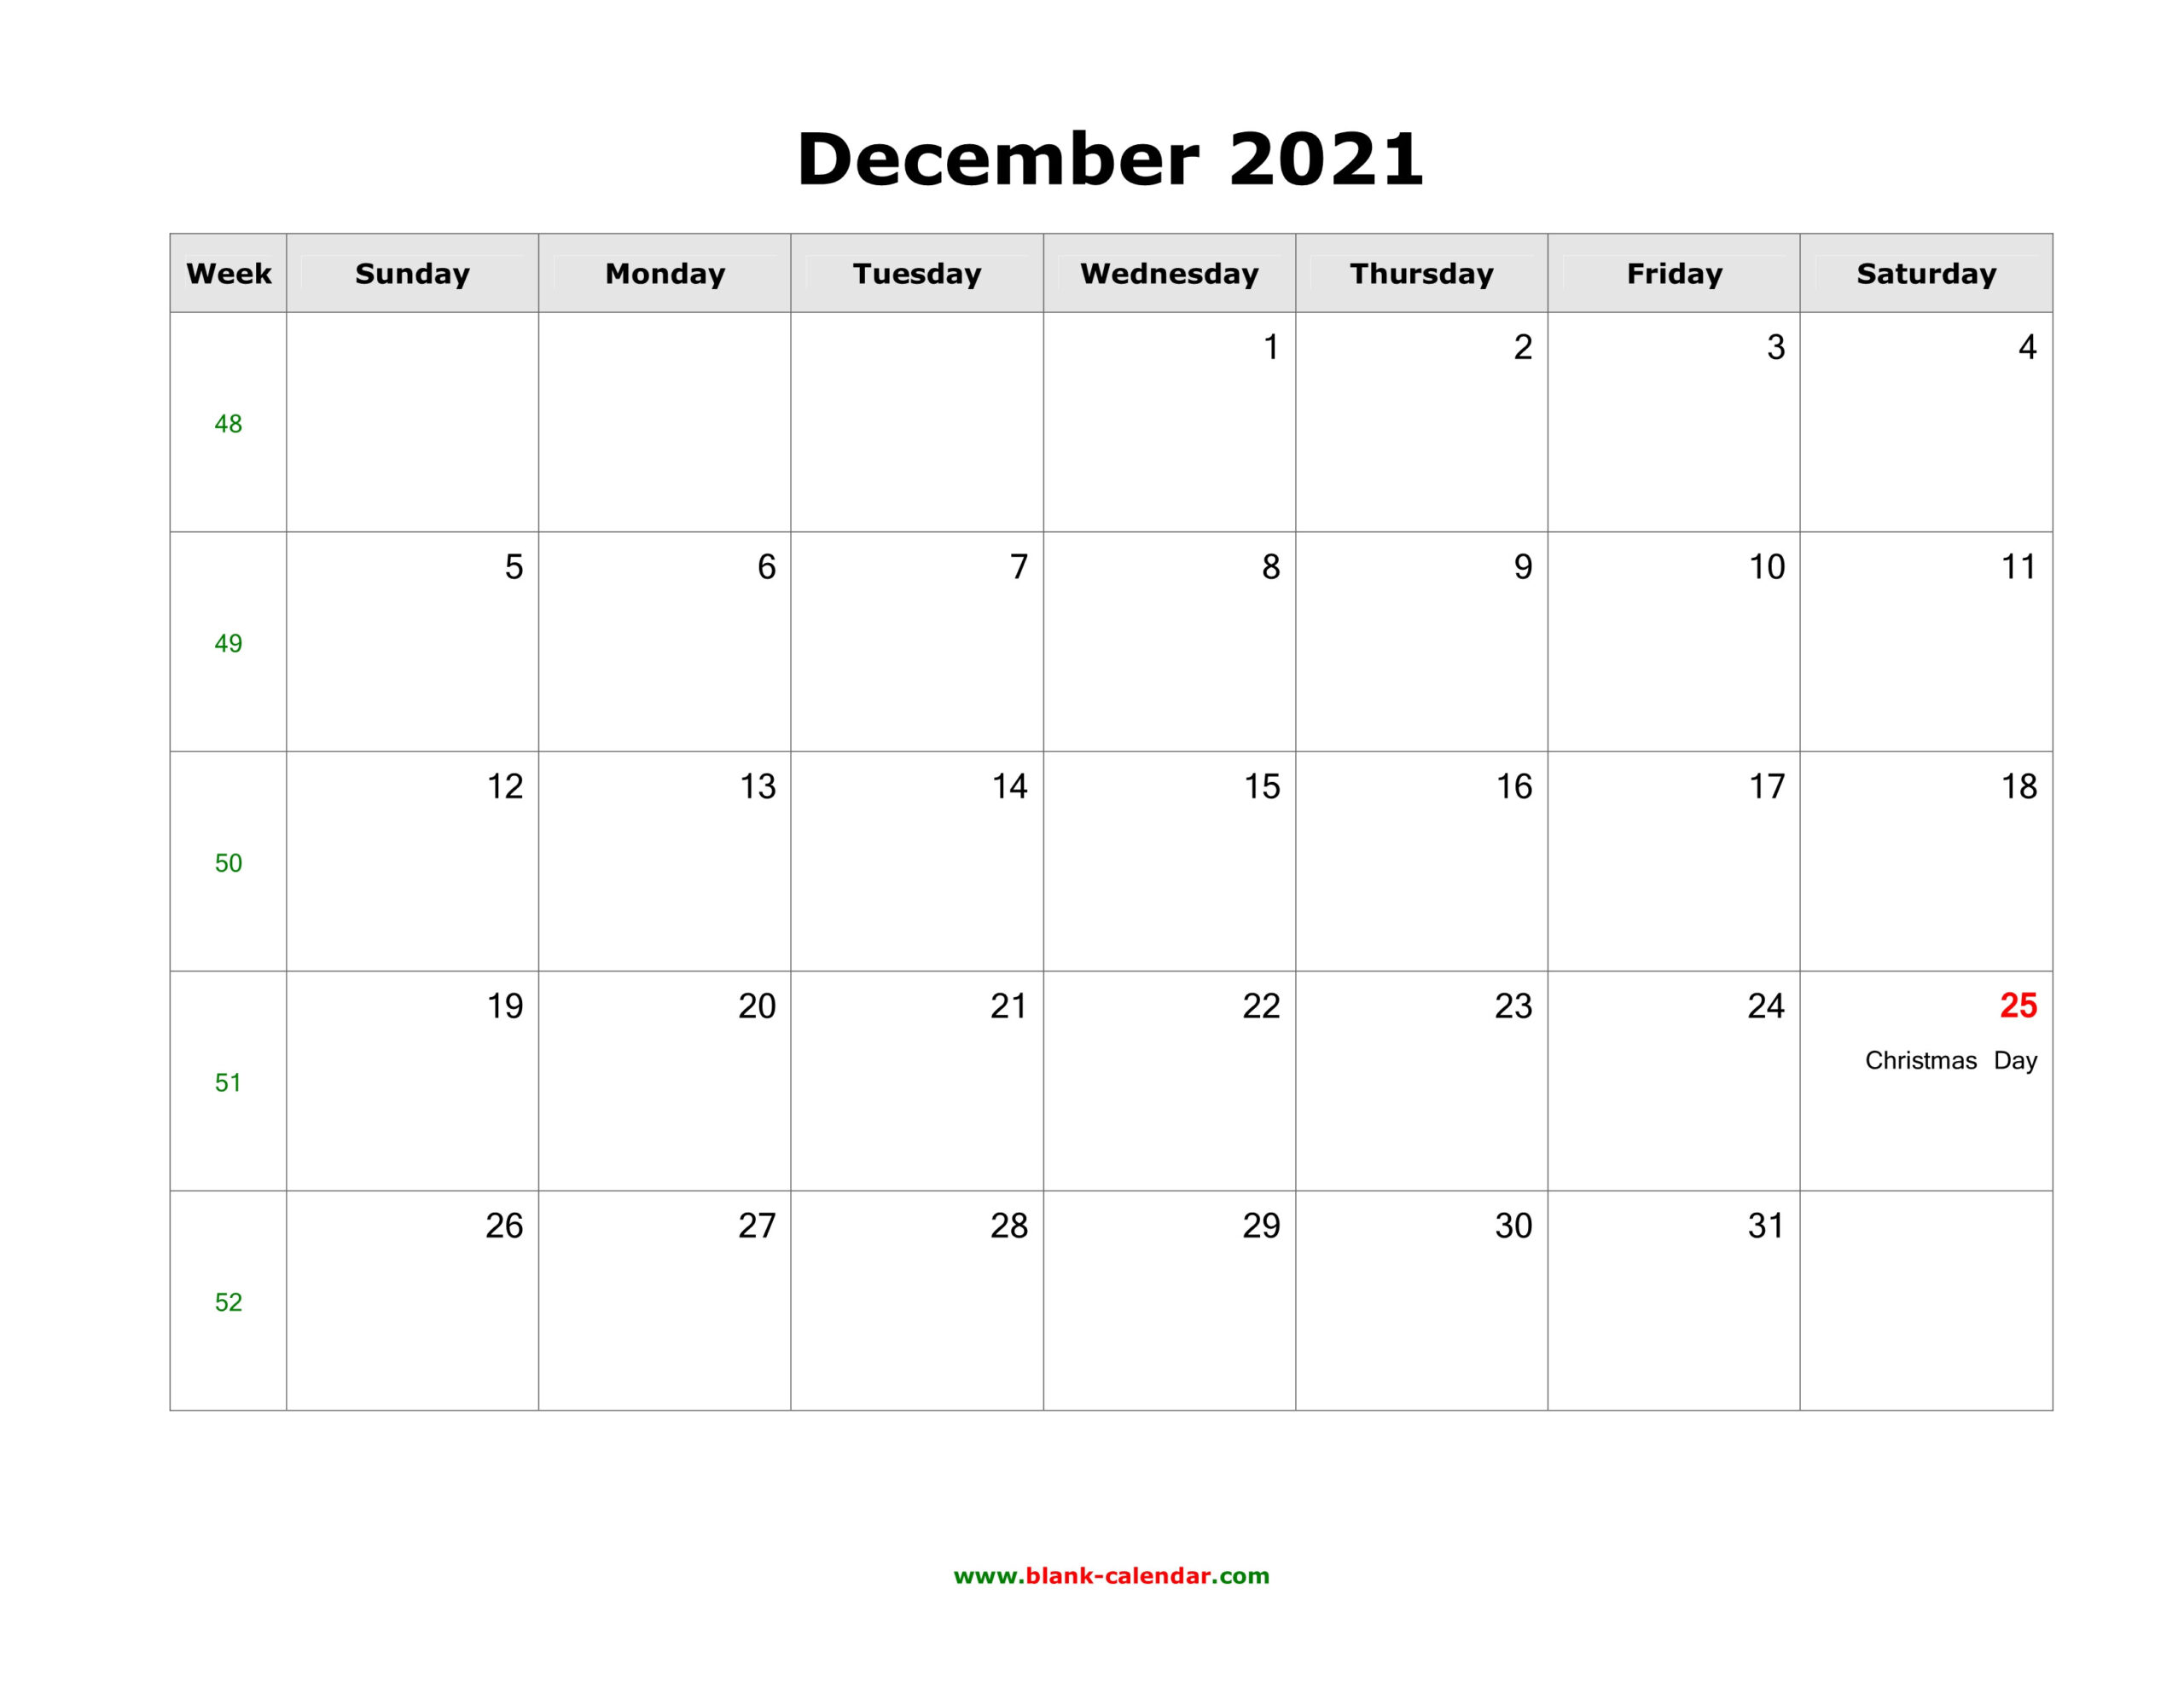 December 2021 Blank Calendar | Free Download Calendar-2021 Blank Vacation Calendar